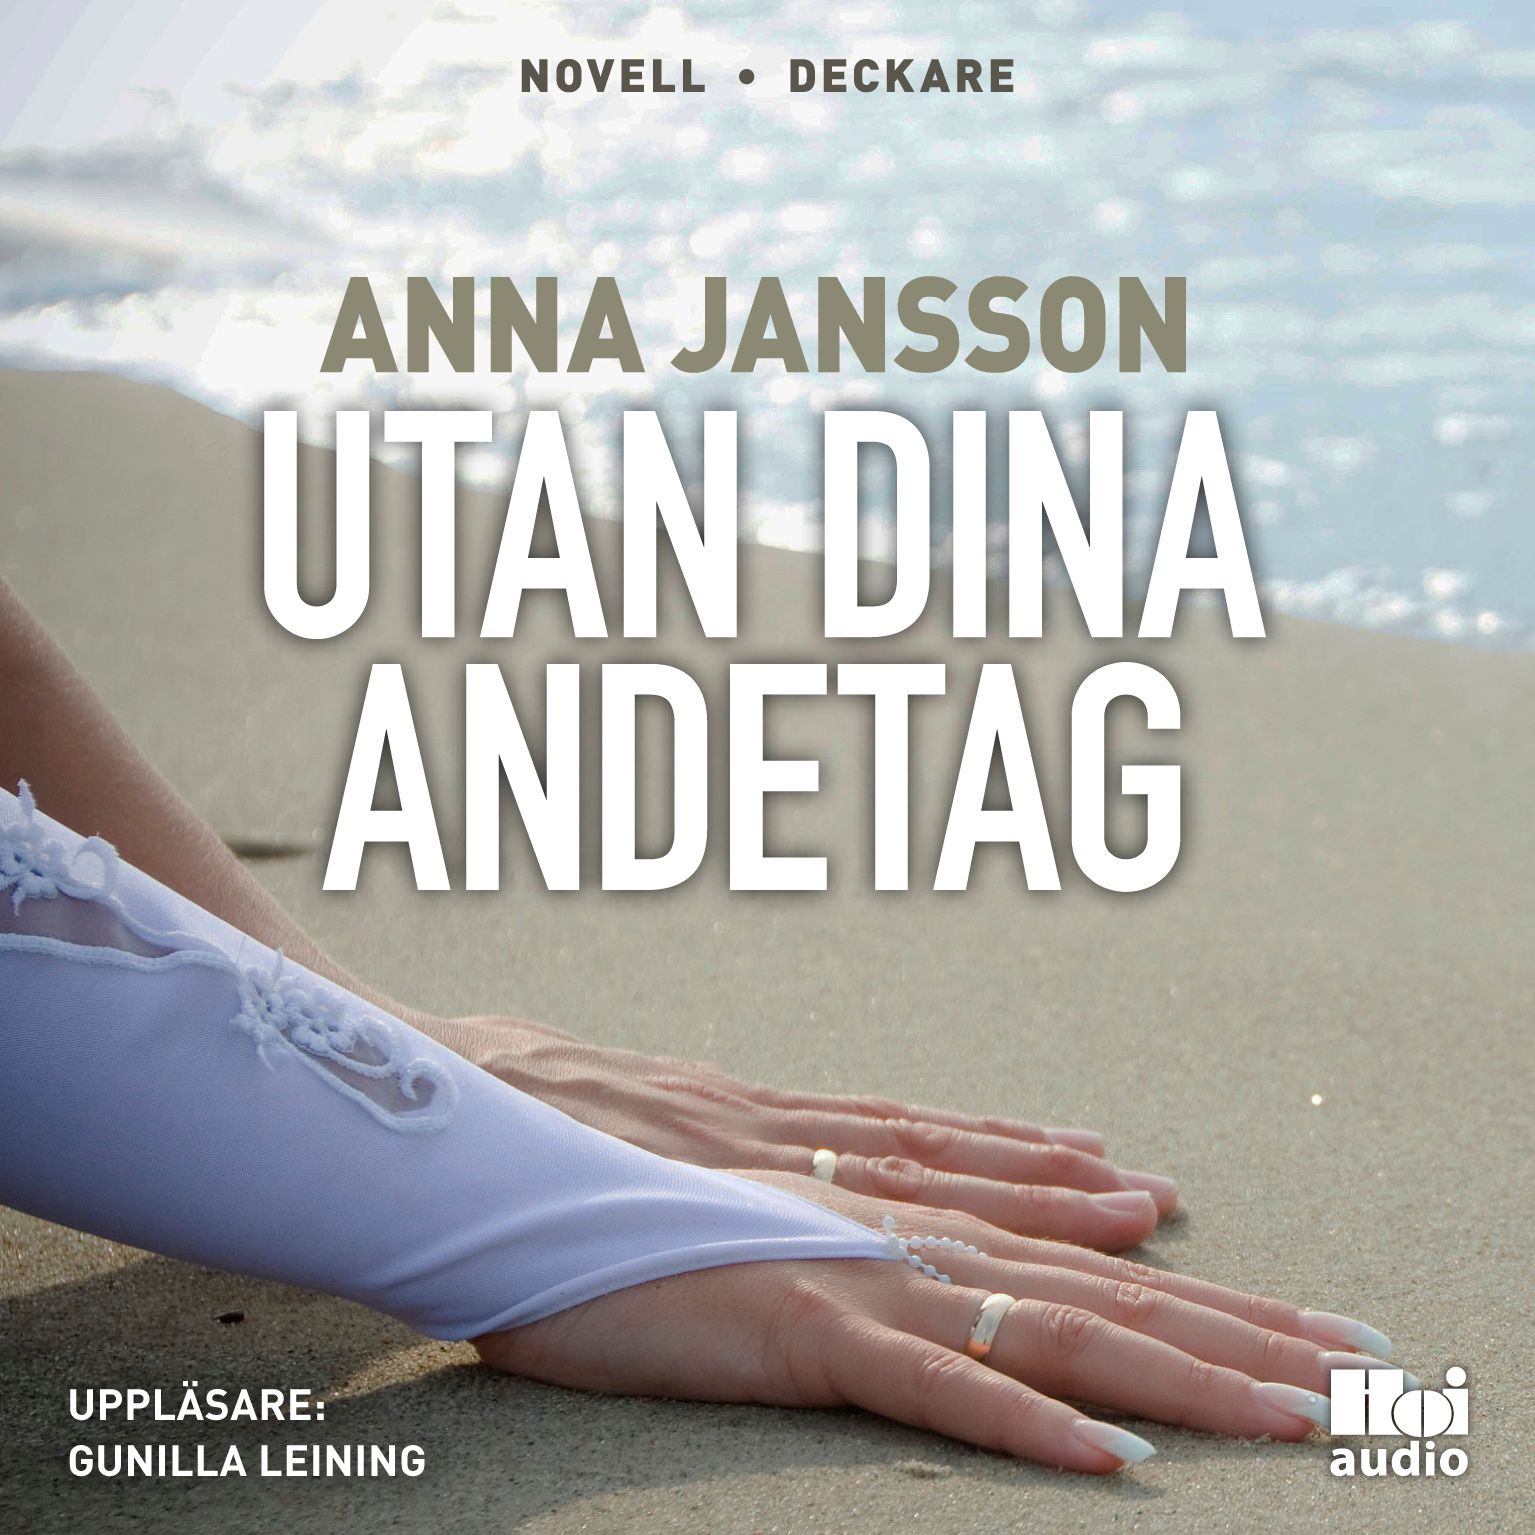 Utan dina andetag, ljudbok av Anna Jansson